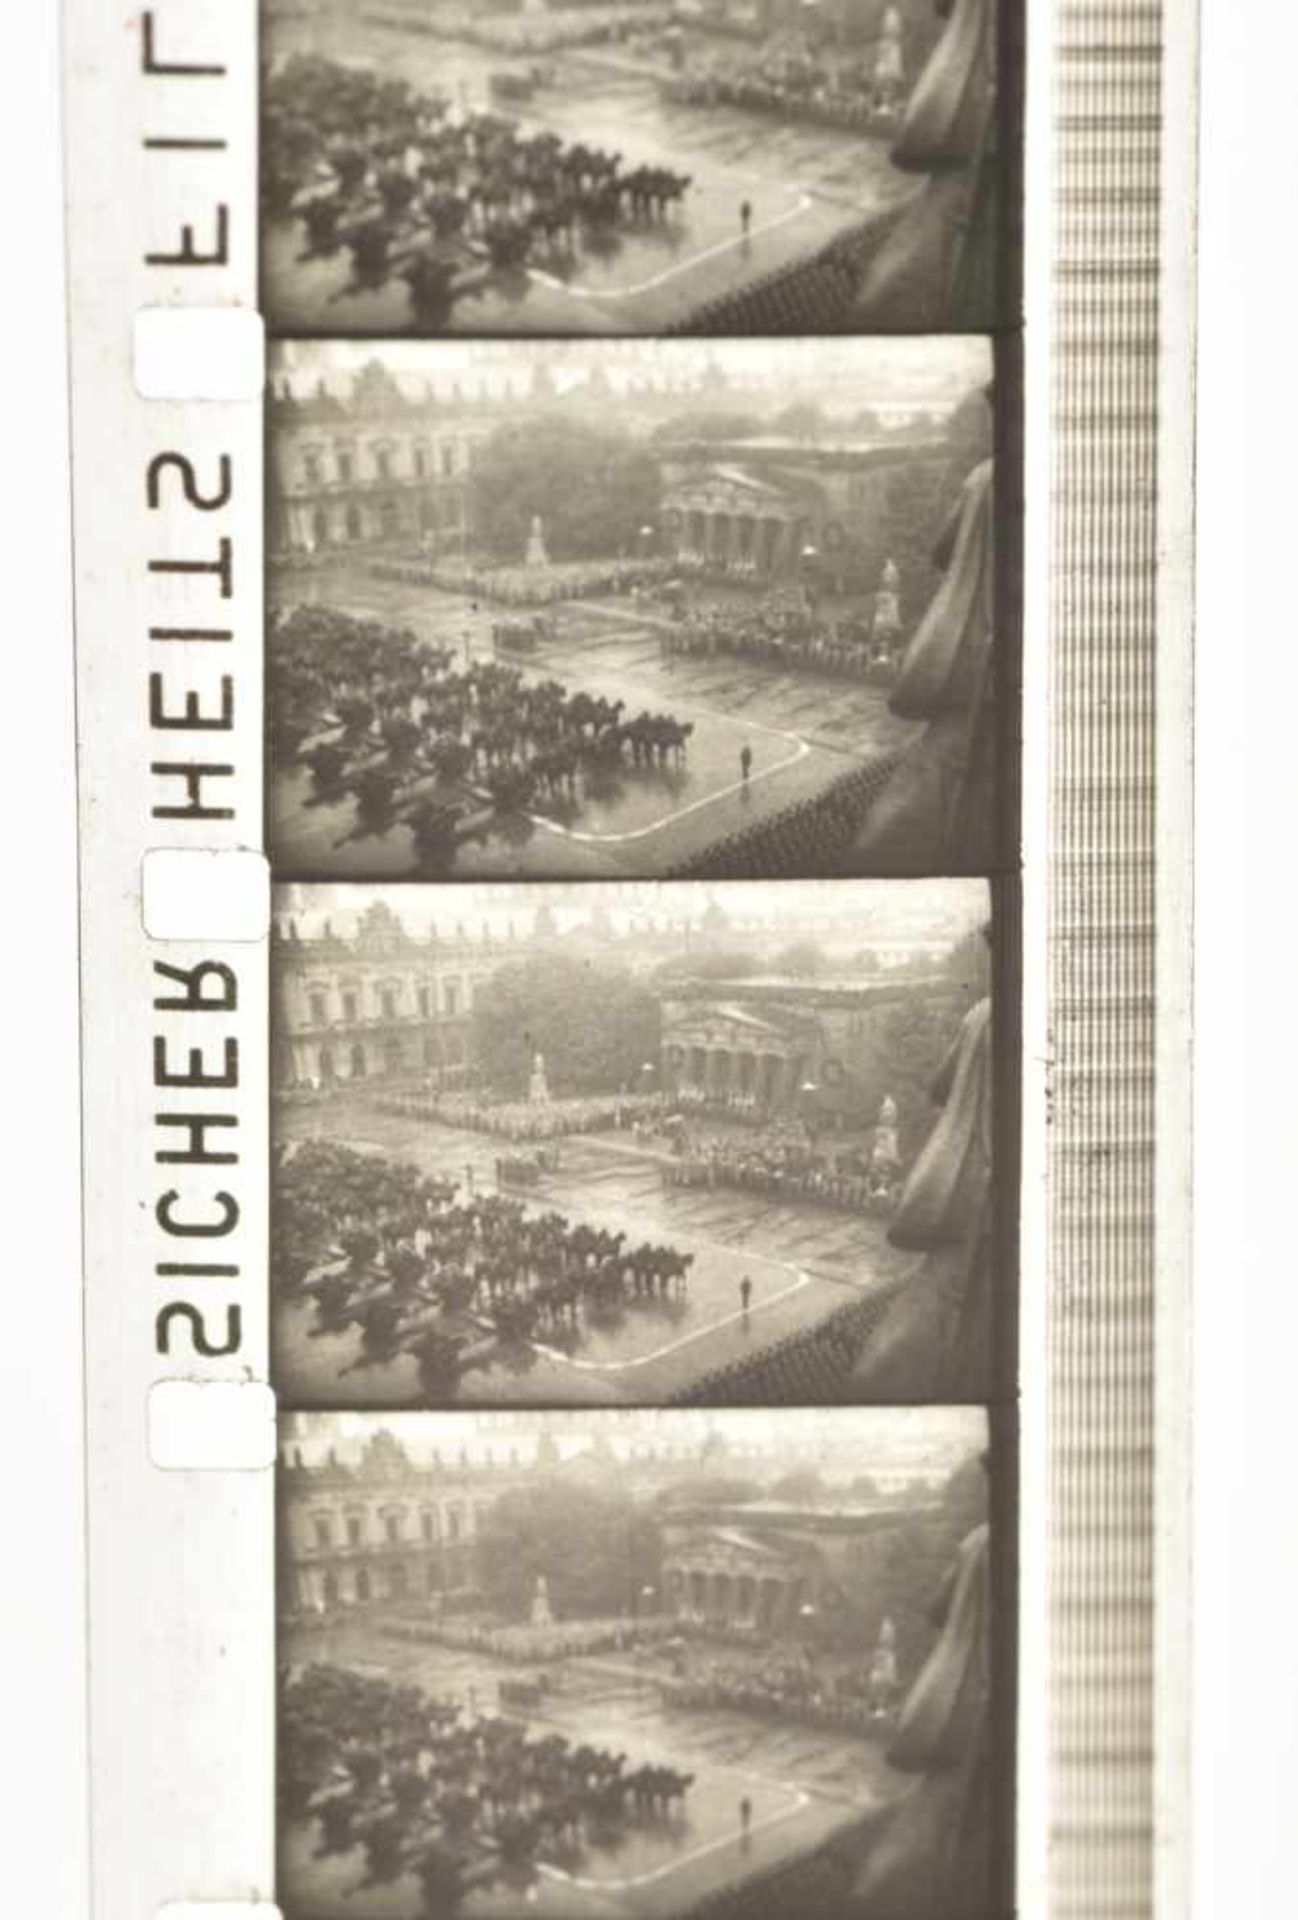 Bobine de film Cadre en aluminium, sans marquages visibles. Film présent mais visiblement incomplet. - Image 2 of 2